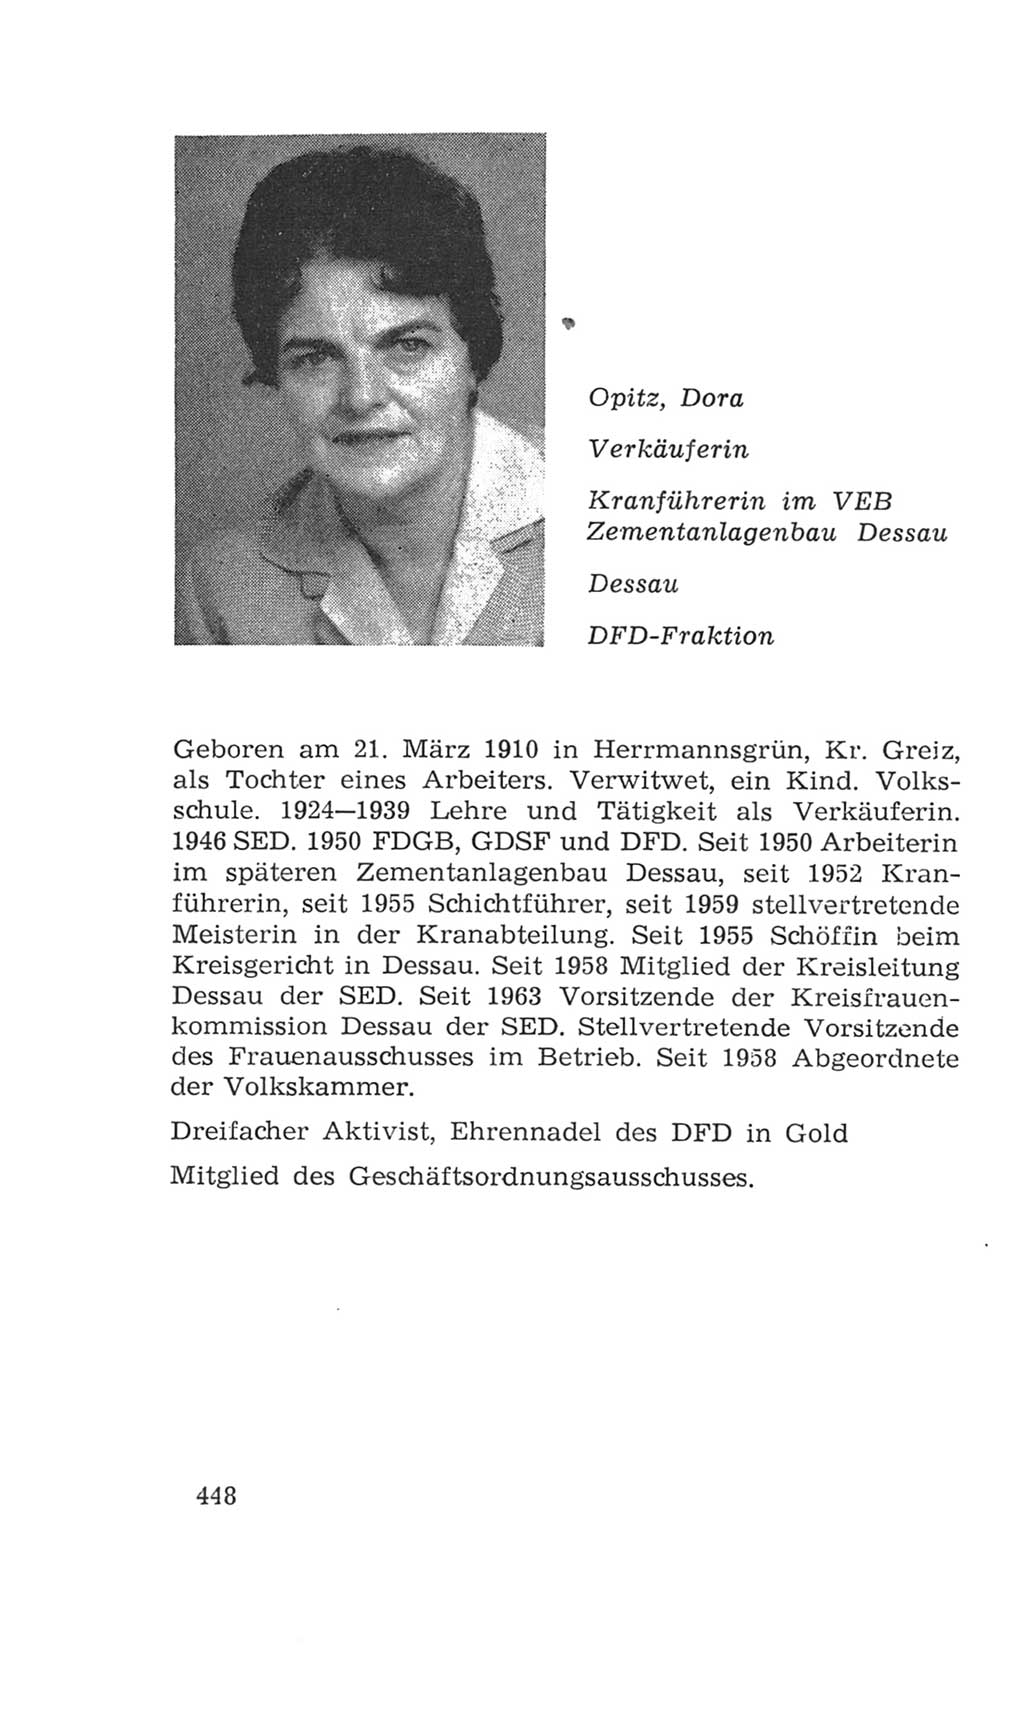 Volkskammer (VK) der Deutschen Demokratischen Republik (DDR), 4. Wahlperiode 1963-1967, Seite 448 (VK. DDR 4. WP. 1963-1967, S. 448)